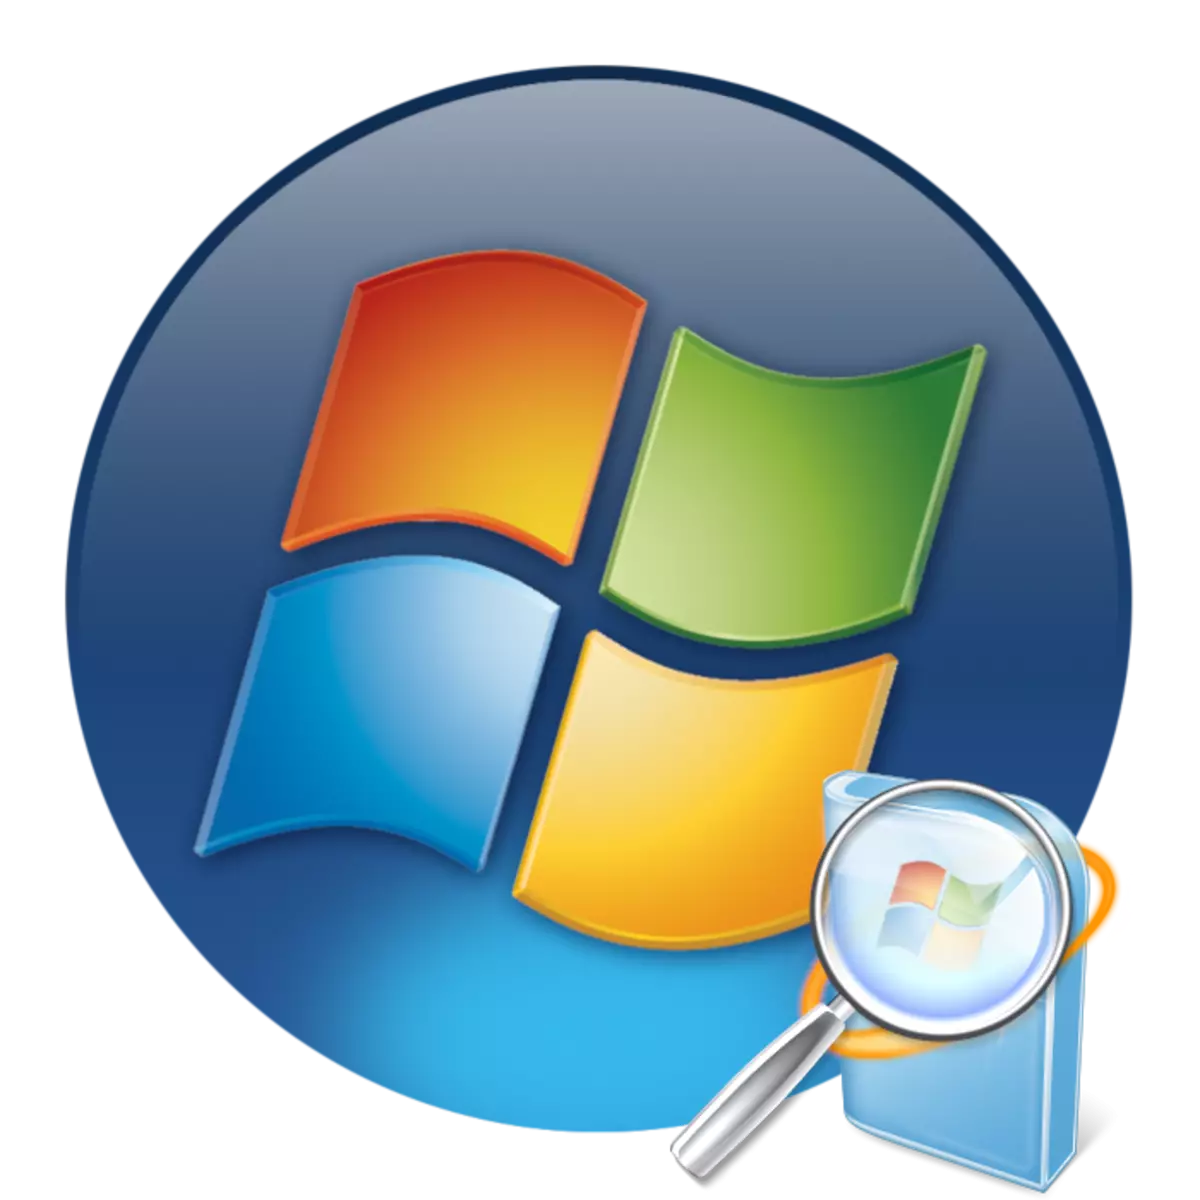 Kie Windows 7 ĝisdatigoj estas konservitaj